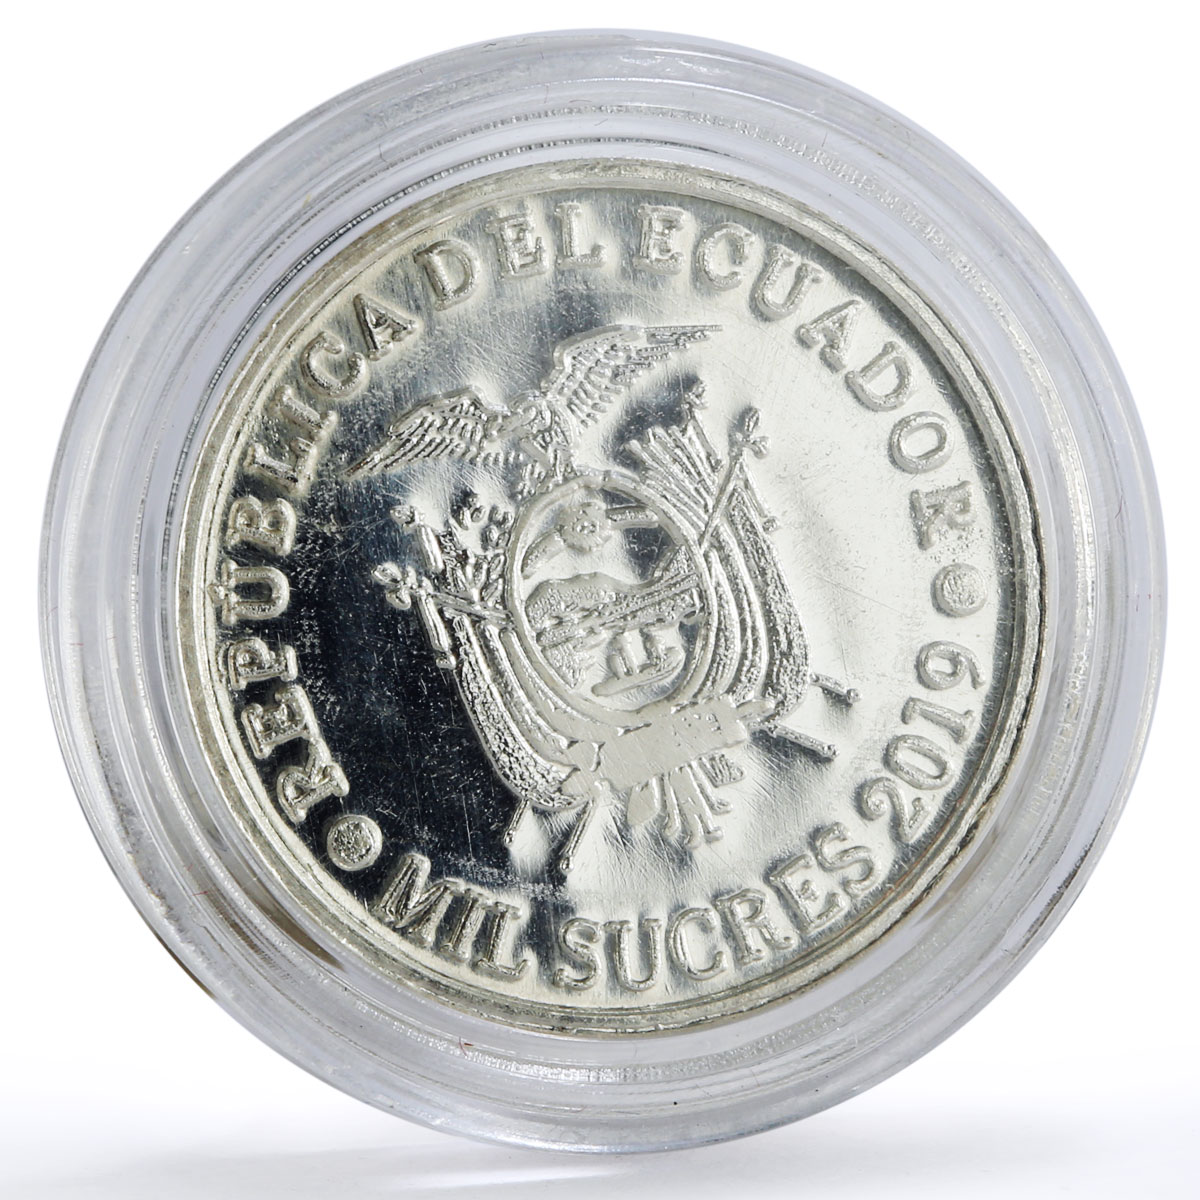 Ecuador 1000 sucres 43th President Jose Maria Ibarra Politics silver coin 2019